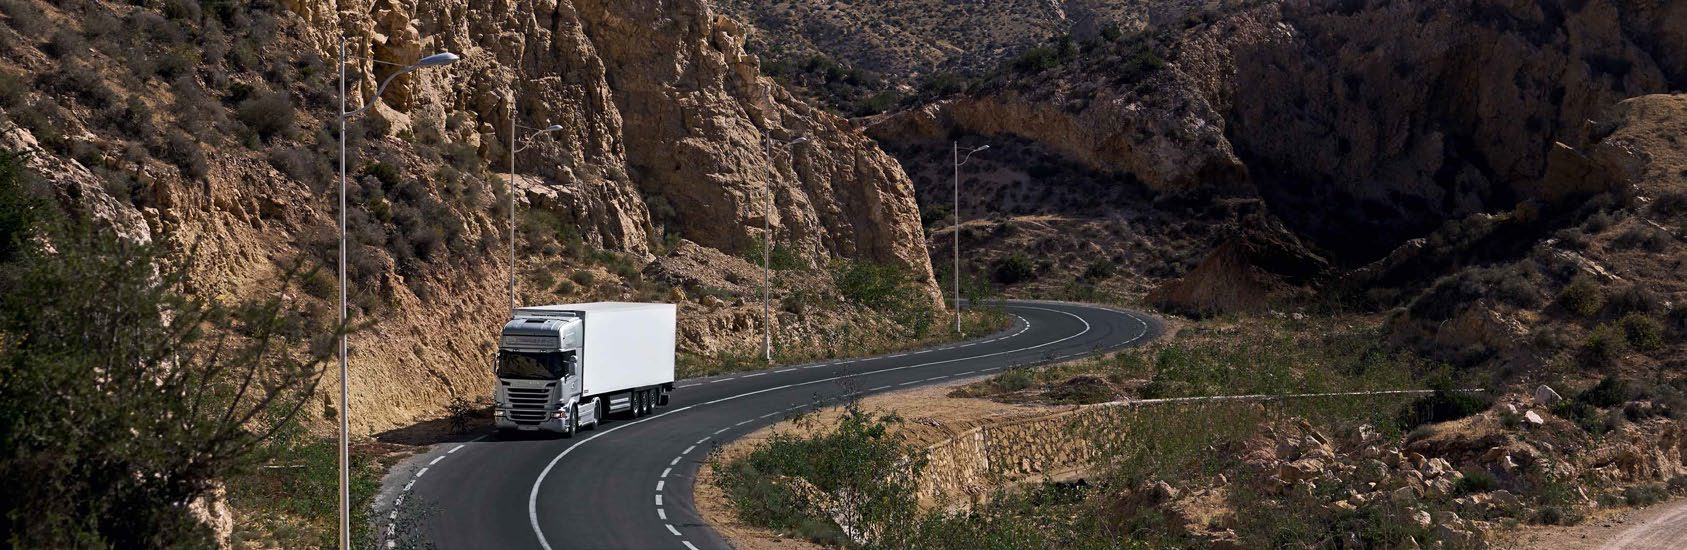 Steeds vooruit gaan. Uw truck hoort op de weg. Daar is uw bedrijf actief. Maar maximale bedrijfstijd is meer dan uw voertuigen in perfecte conditie houden.